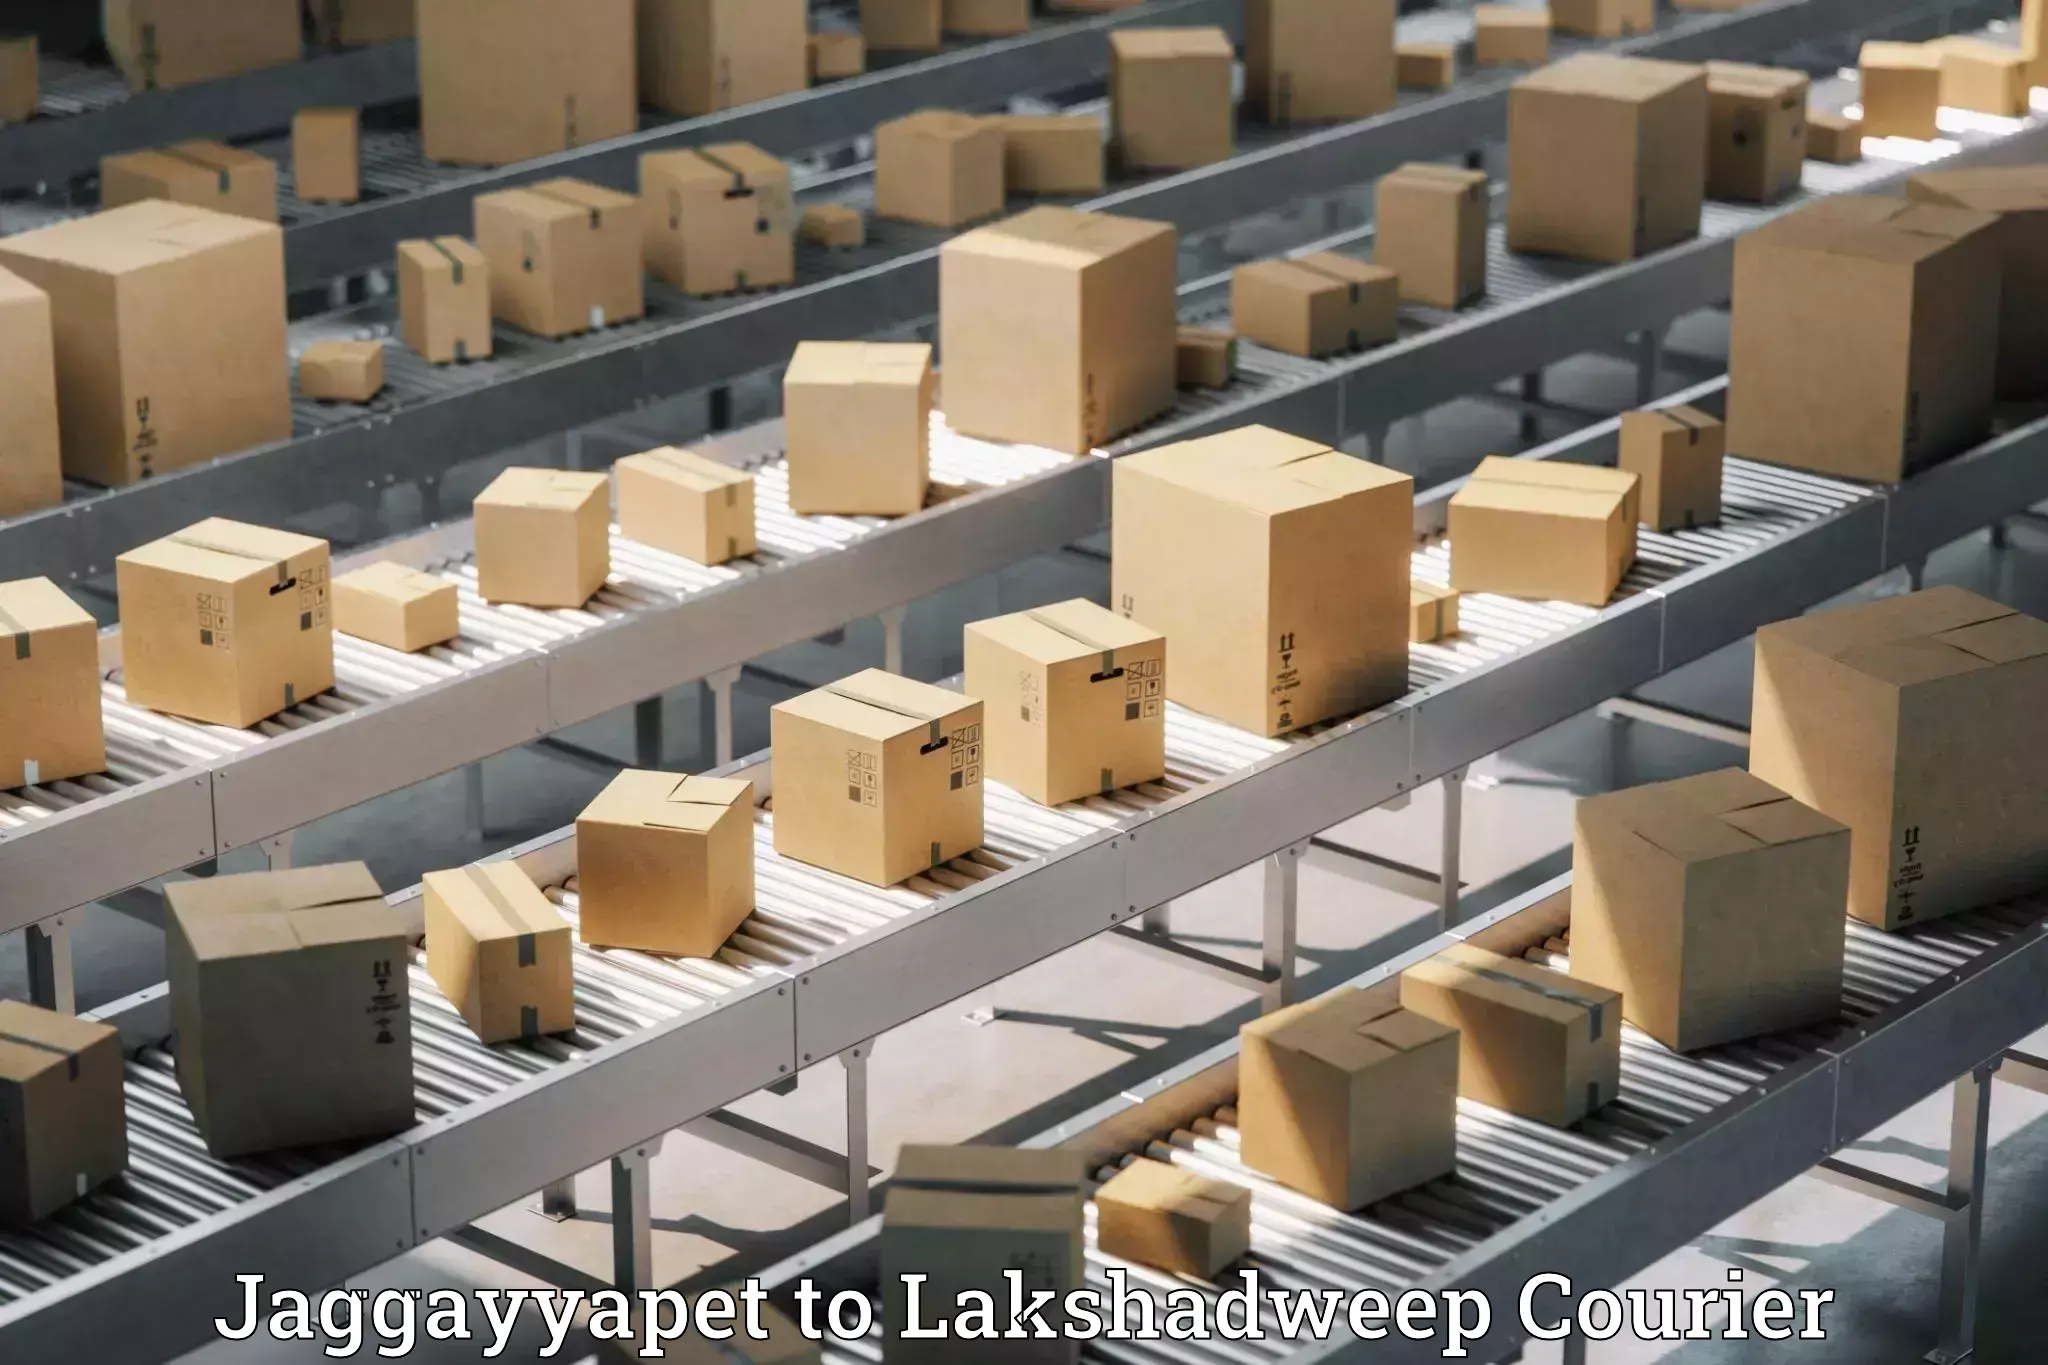 High-capacity shipping options Jaggayyapet to Lakshadweep